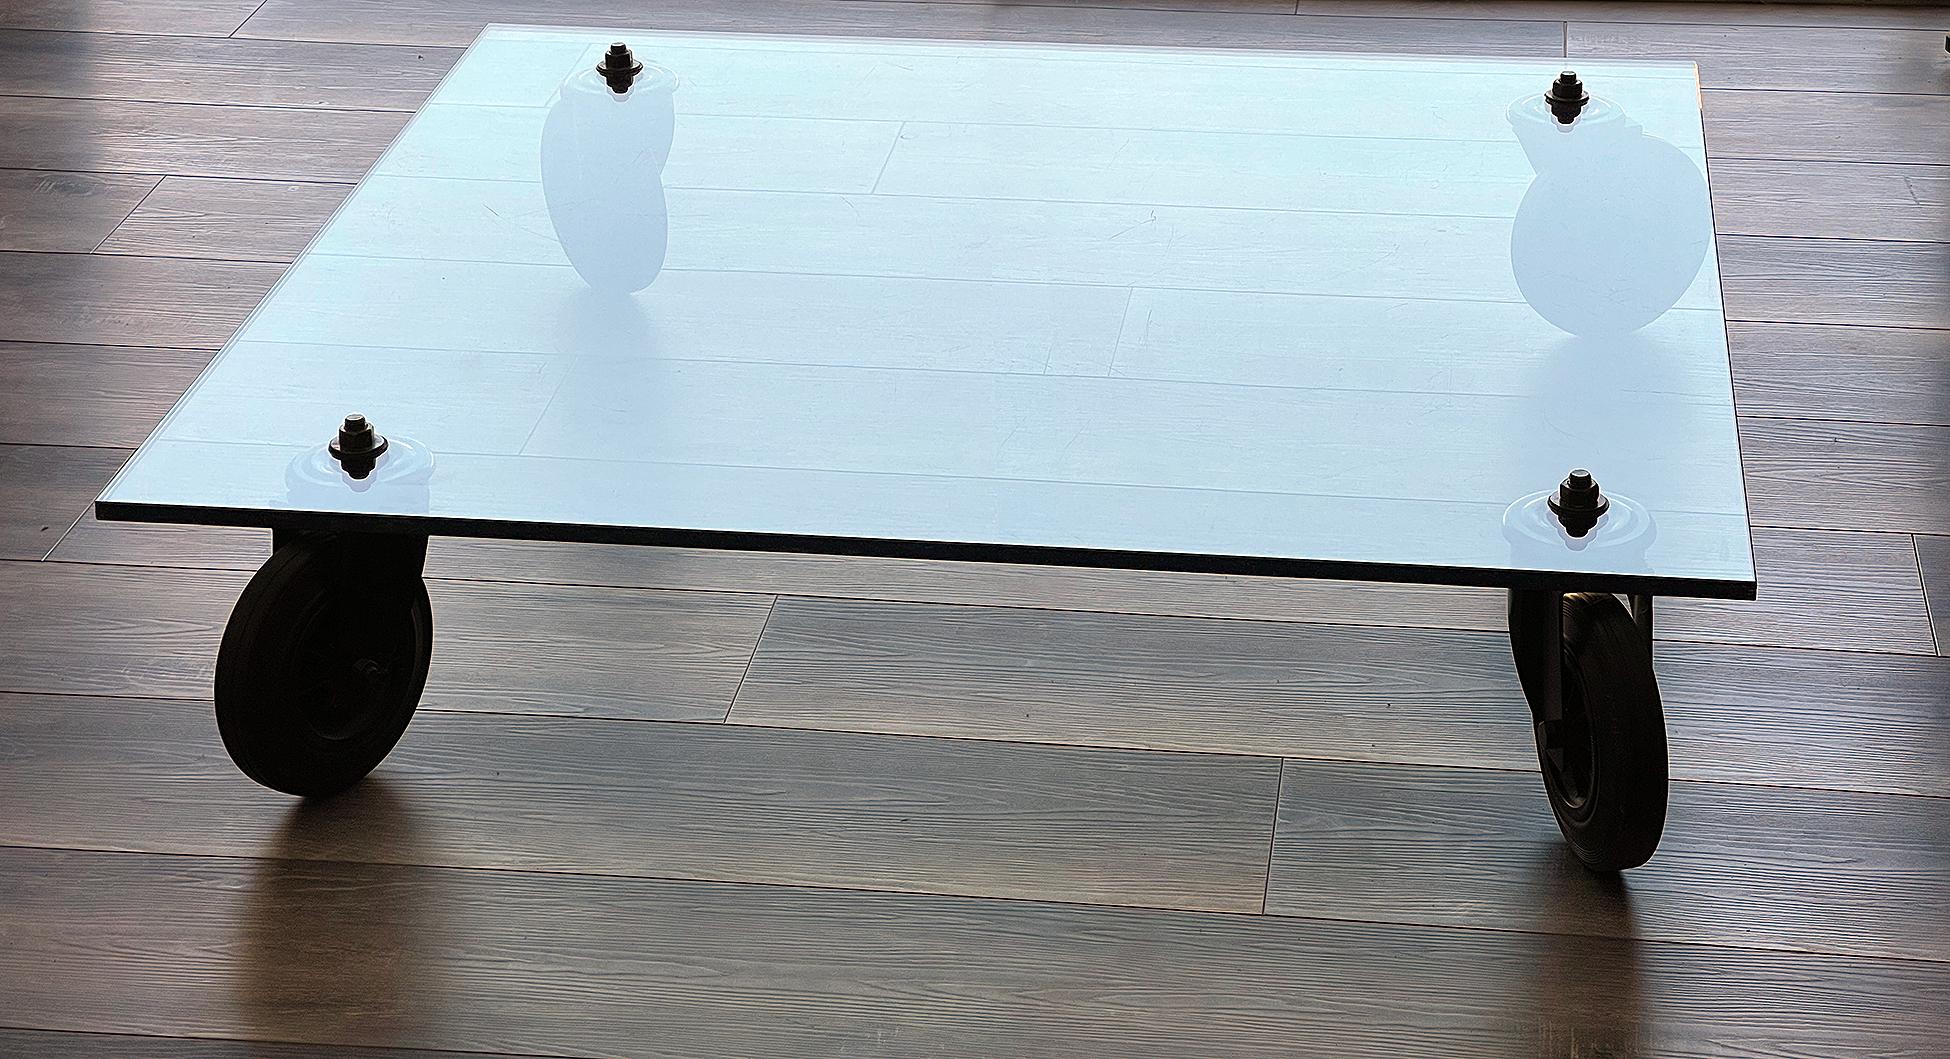 Table basse en verre de Gae Aulenti pour Fontana Arte avec roues en caoutchouc laqué noir.
Plateau en cristal épais monté sur quatre roues en fer laqué noir et caoutchouc.

Dimensions : 43